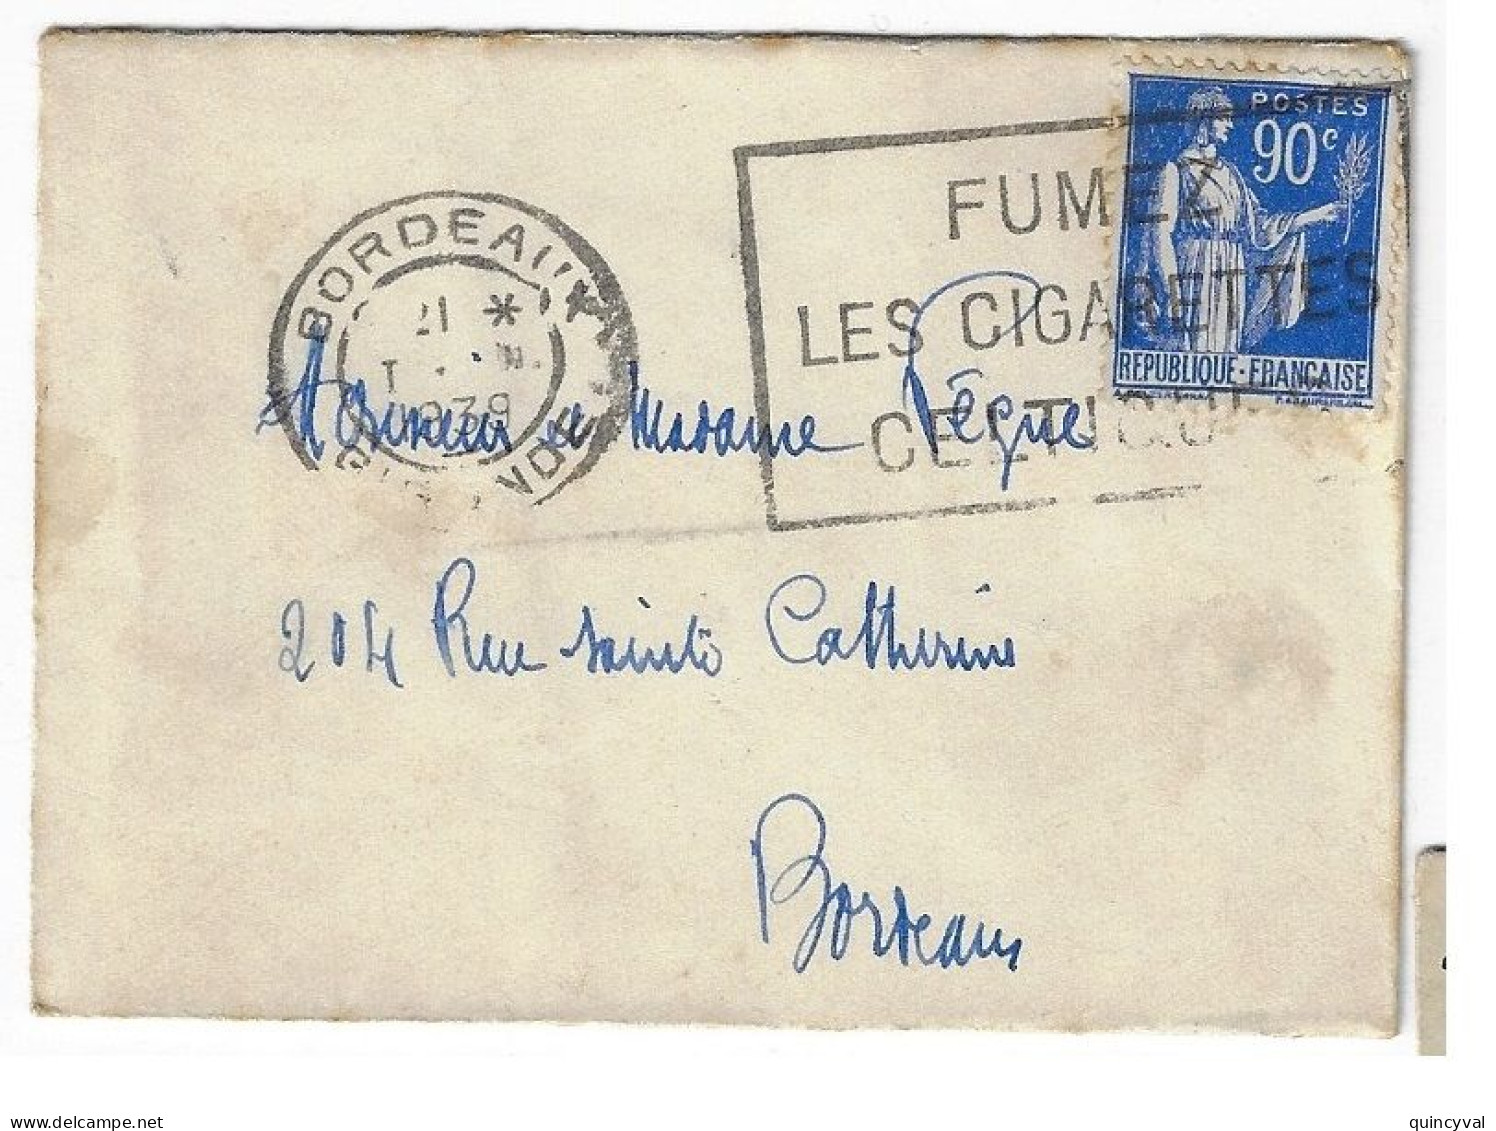 BORDEAUX Enveloppe Carte De Visite Mignonnette 90c Paix Yv 368 Ob Meca 1939 Fumez Cigarettes Celtiques - Covers & Documents